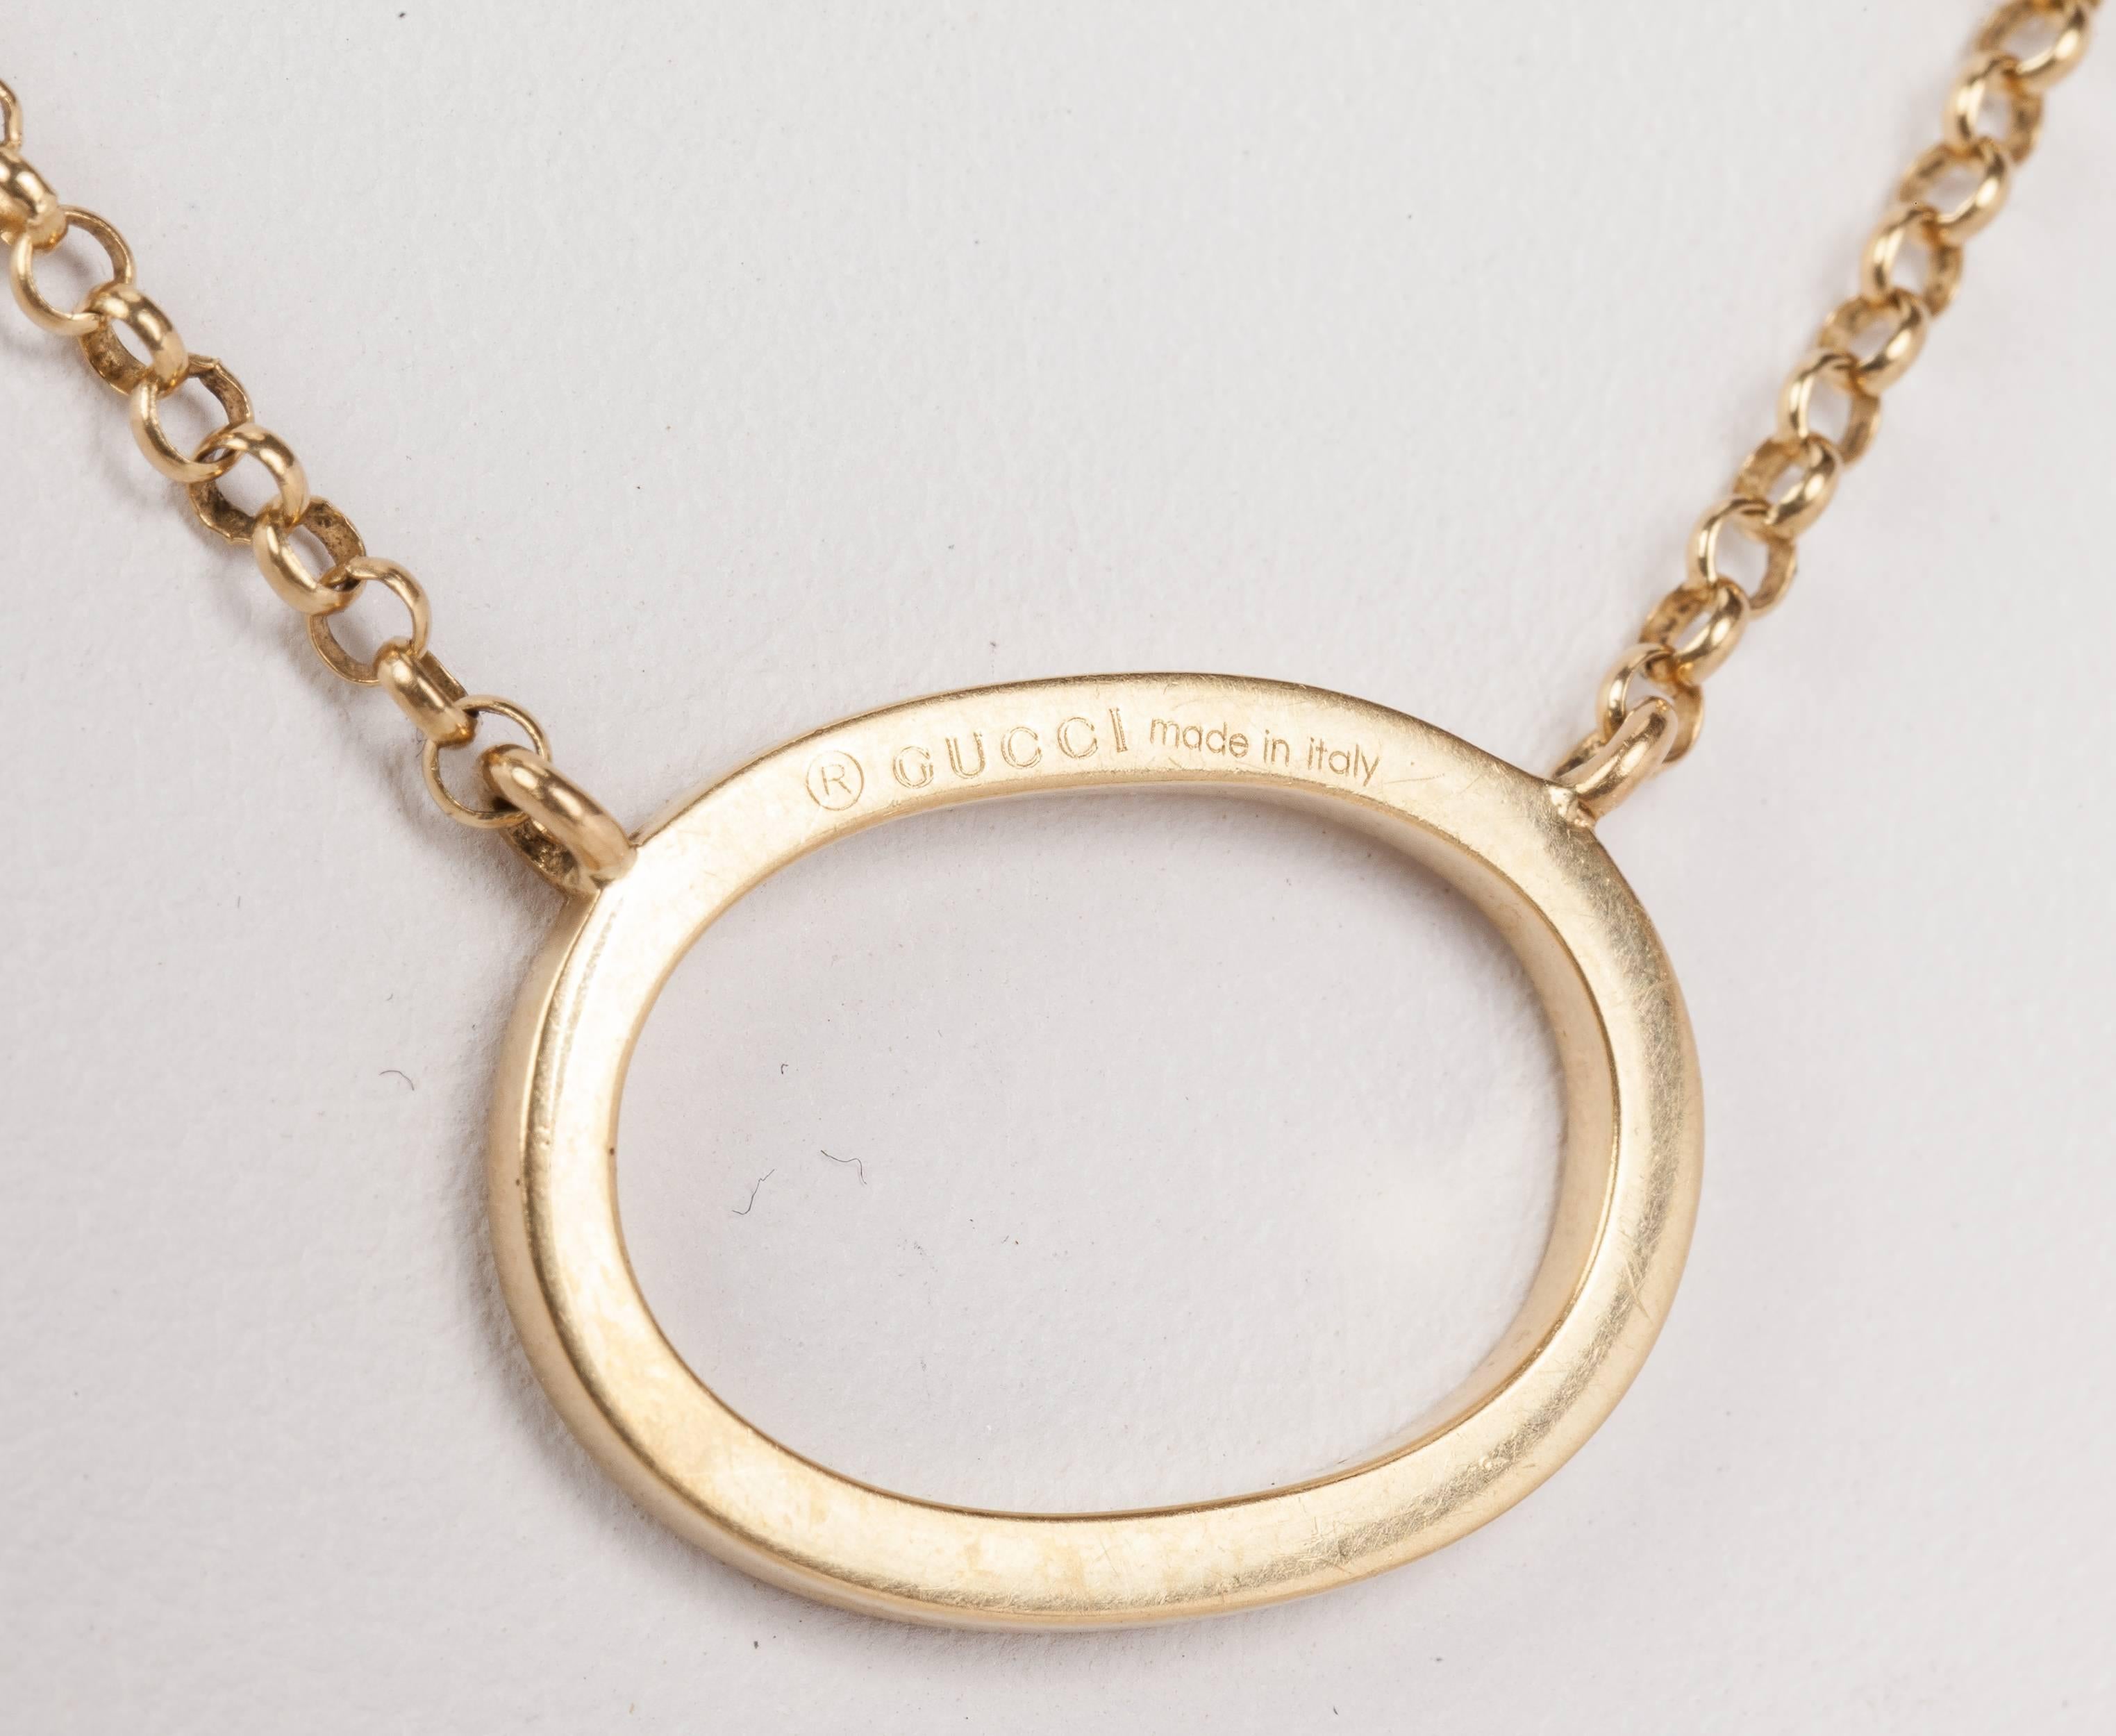 Collier pendentif ovale en or jaune 18 carats Gucci. Le poids total du collier est de 6,6 grammes. Le collier mesure 16 3/4